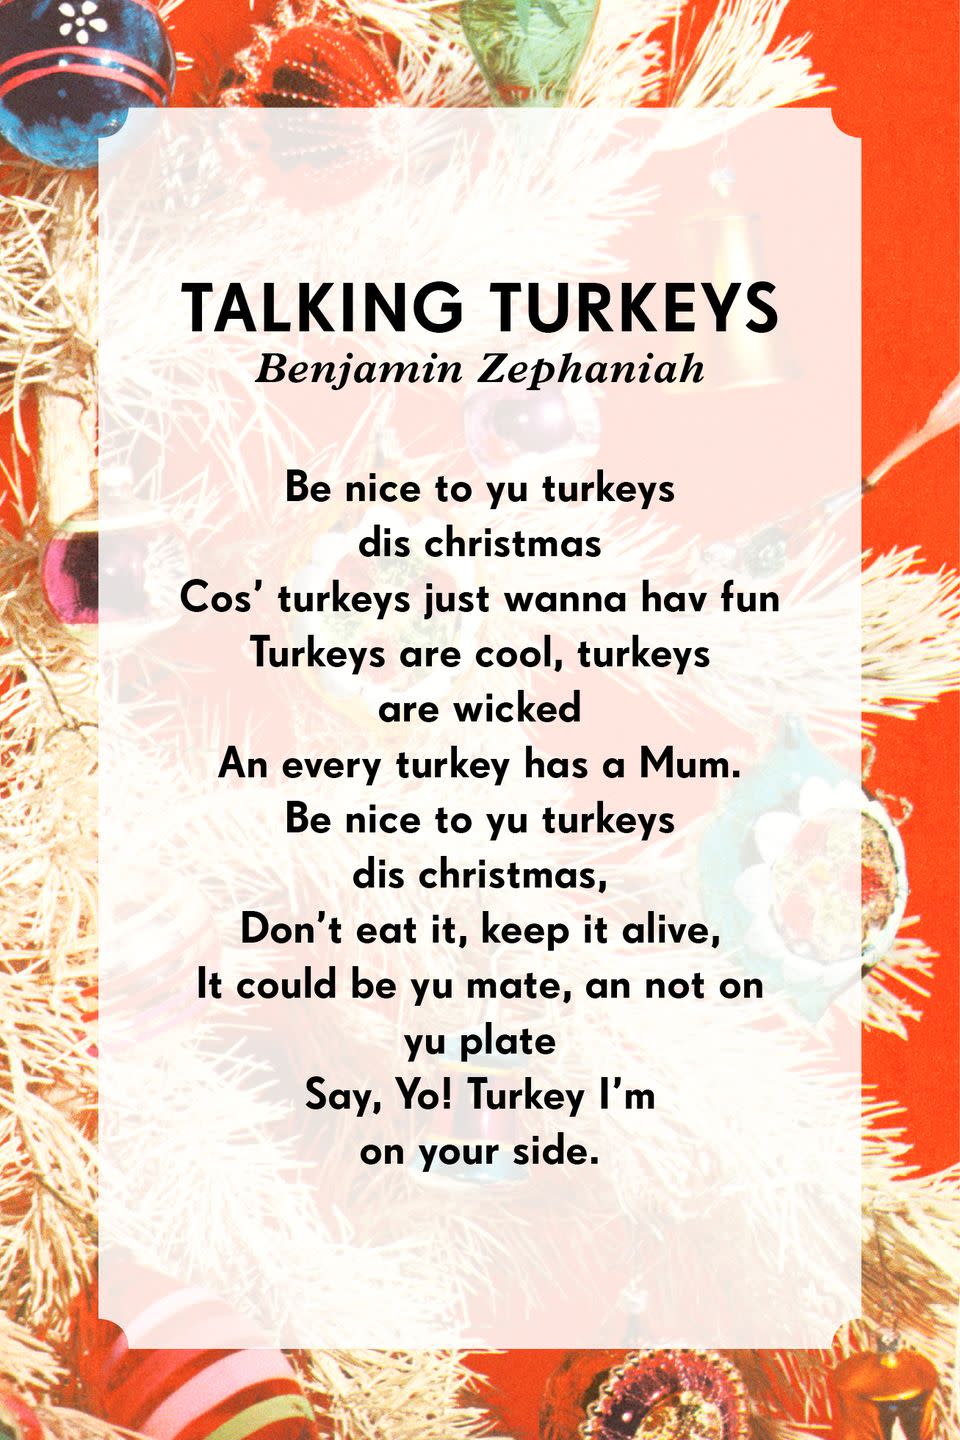 2) Talking Turkeys